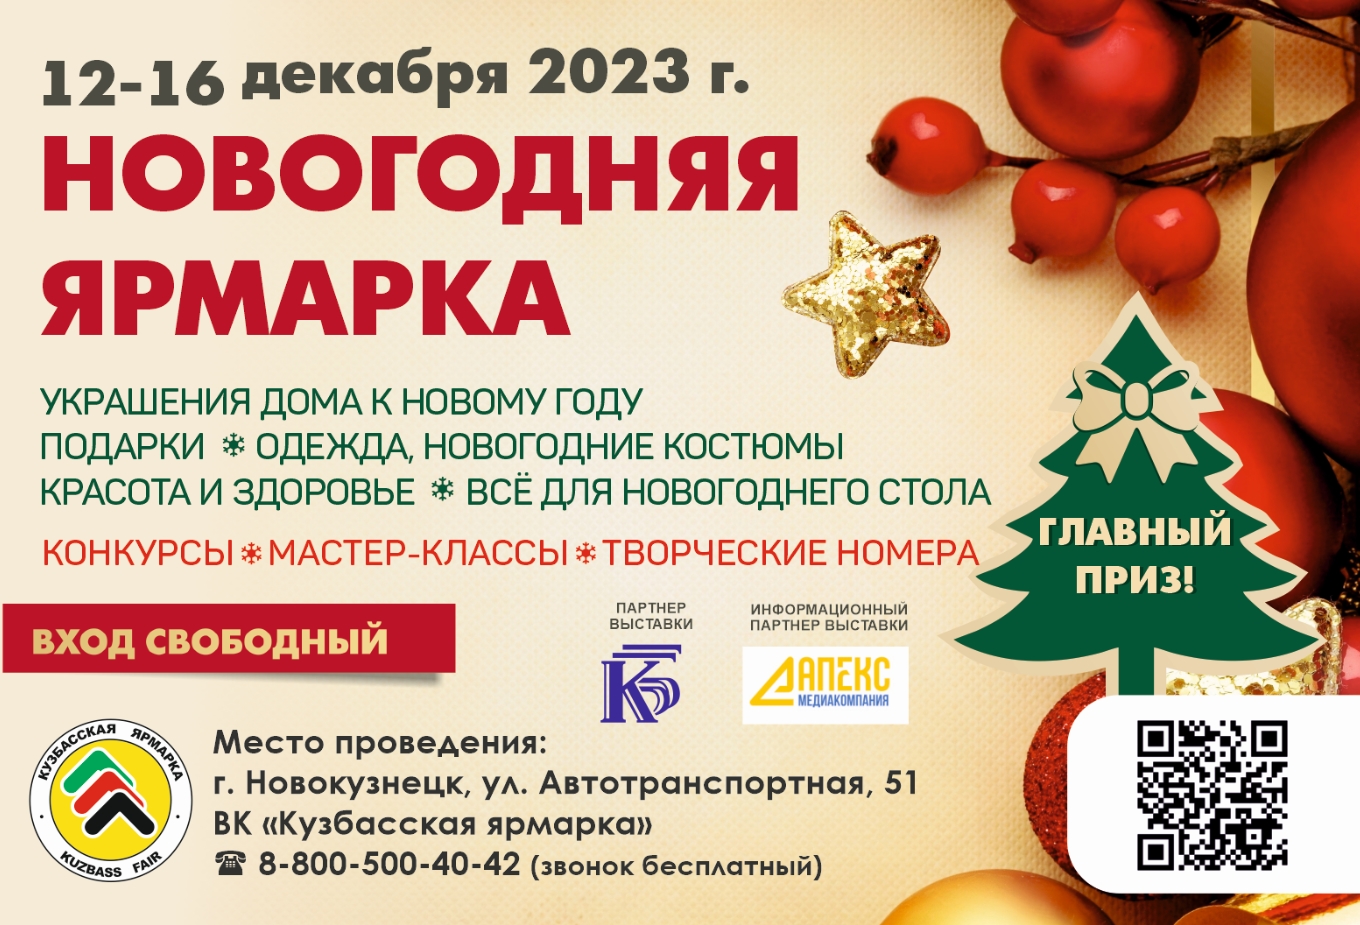 12-16 декабря "Новогодняя ярмарка" в Новокузнецке